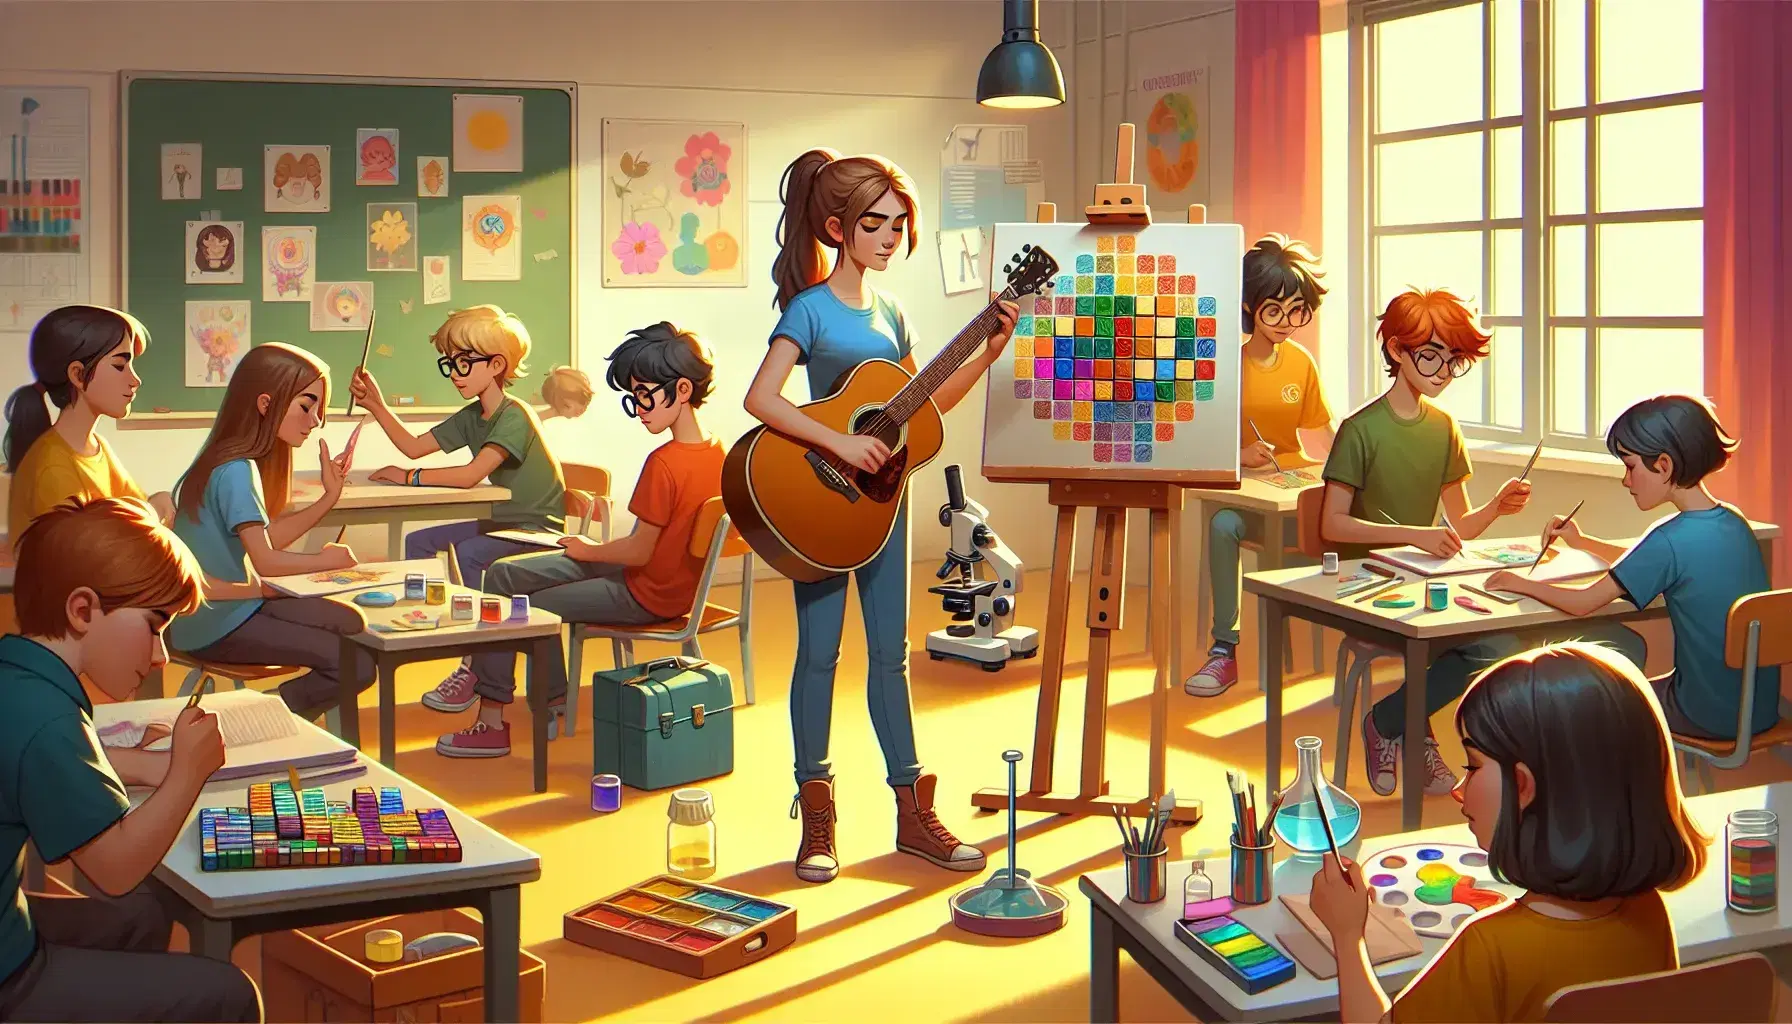 Aula scolastica colorata con studenti assortiti: ragazza suona chitarra, ragazzo dipinge, altro risolve cubo di Rubik, bambina esplora al microscopio.